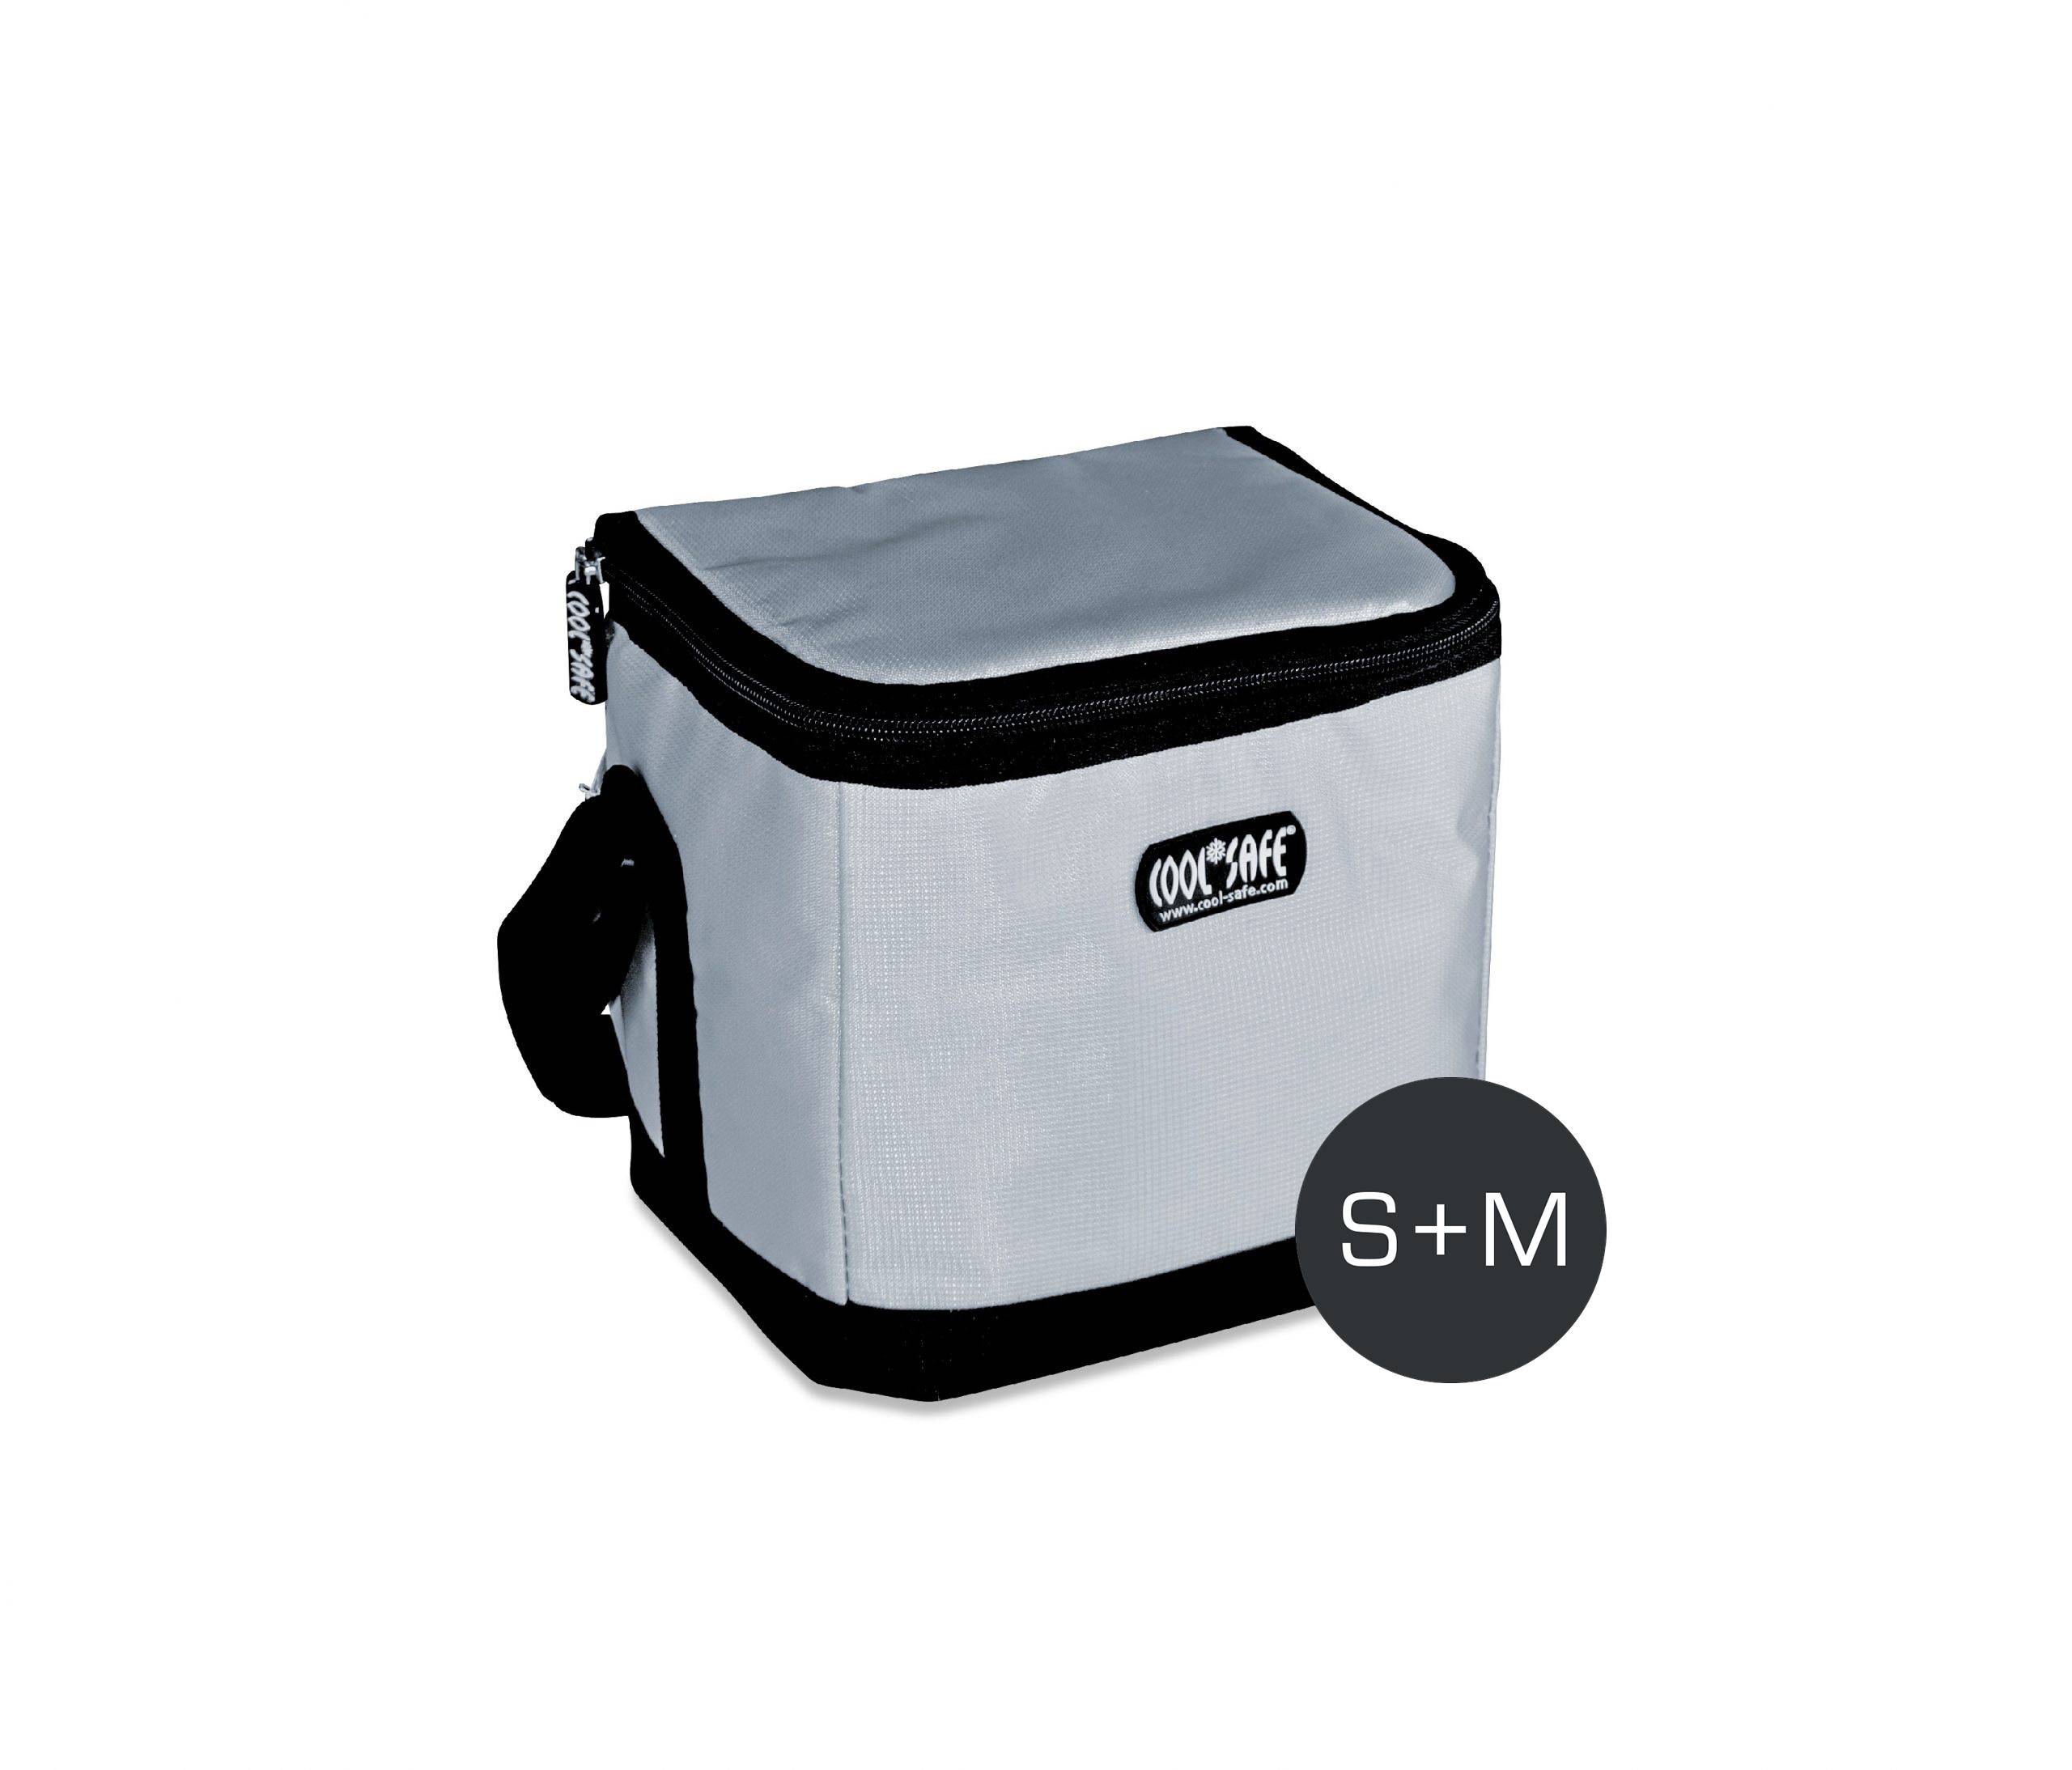 Medizinische Kühltasche tragbar halten cool bequem kleine Eis packung  Schutz Trage tasche Isolierung Aufbewahrung tasche Mini isolierte Packung -  AliExpress